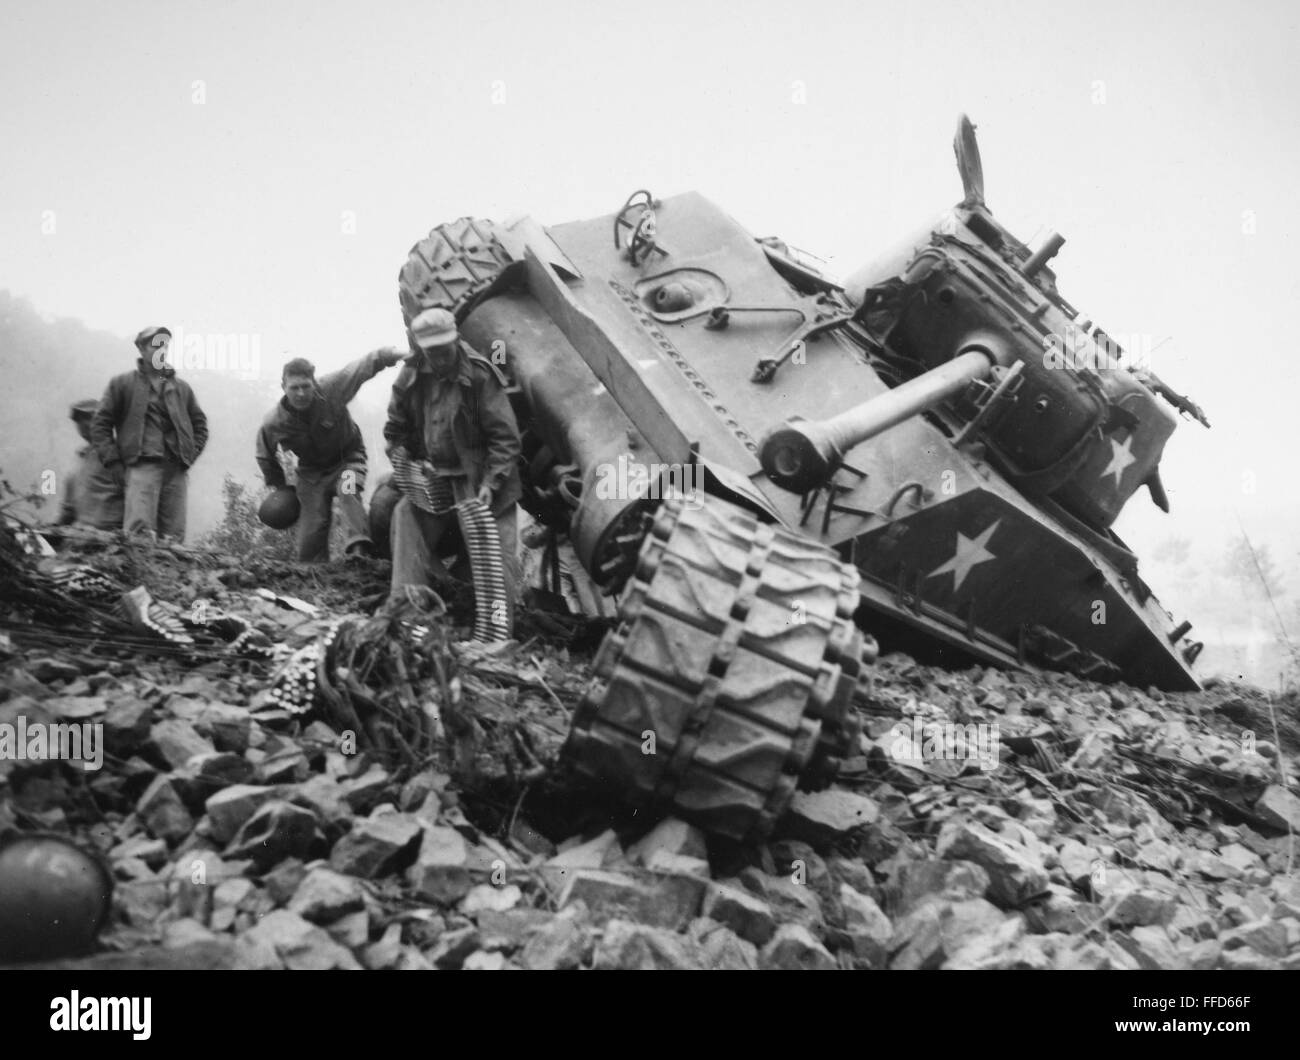 KOREAN WAR: WRECKED TANK. /nA wrecked UN tank in Korea, May 1951. Stock Photo